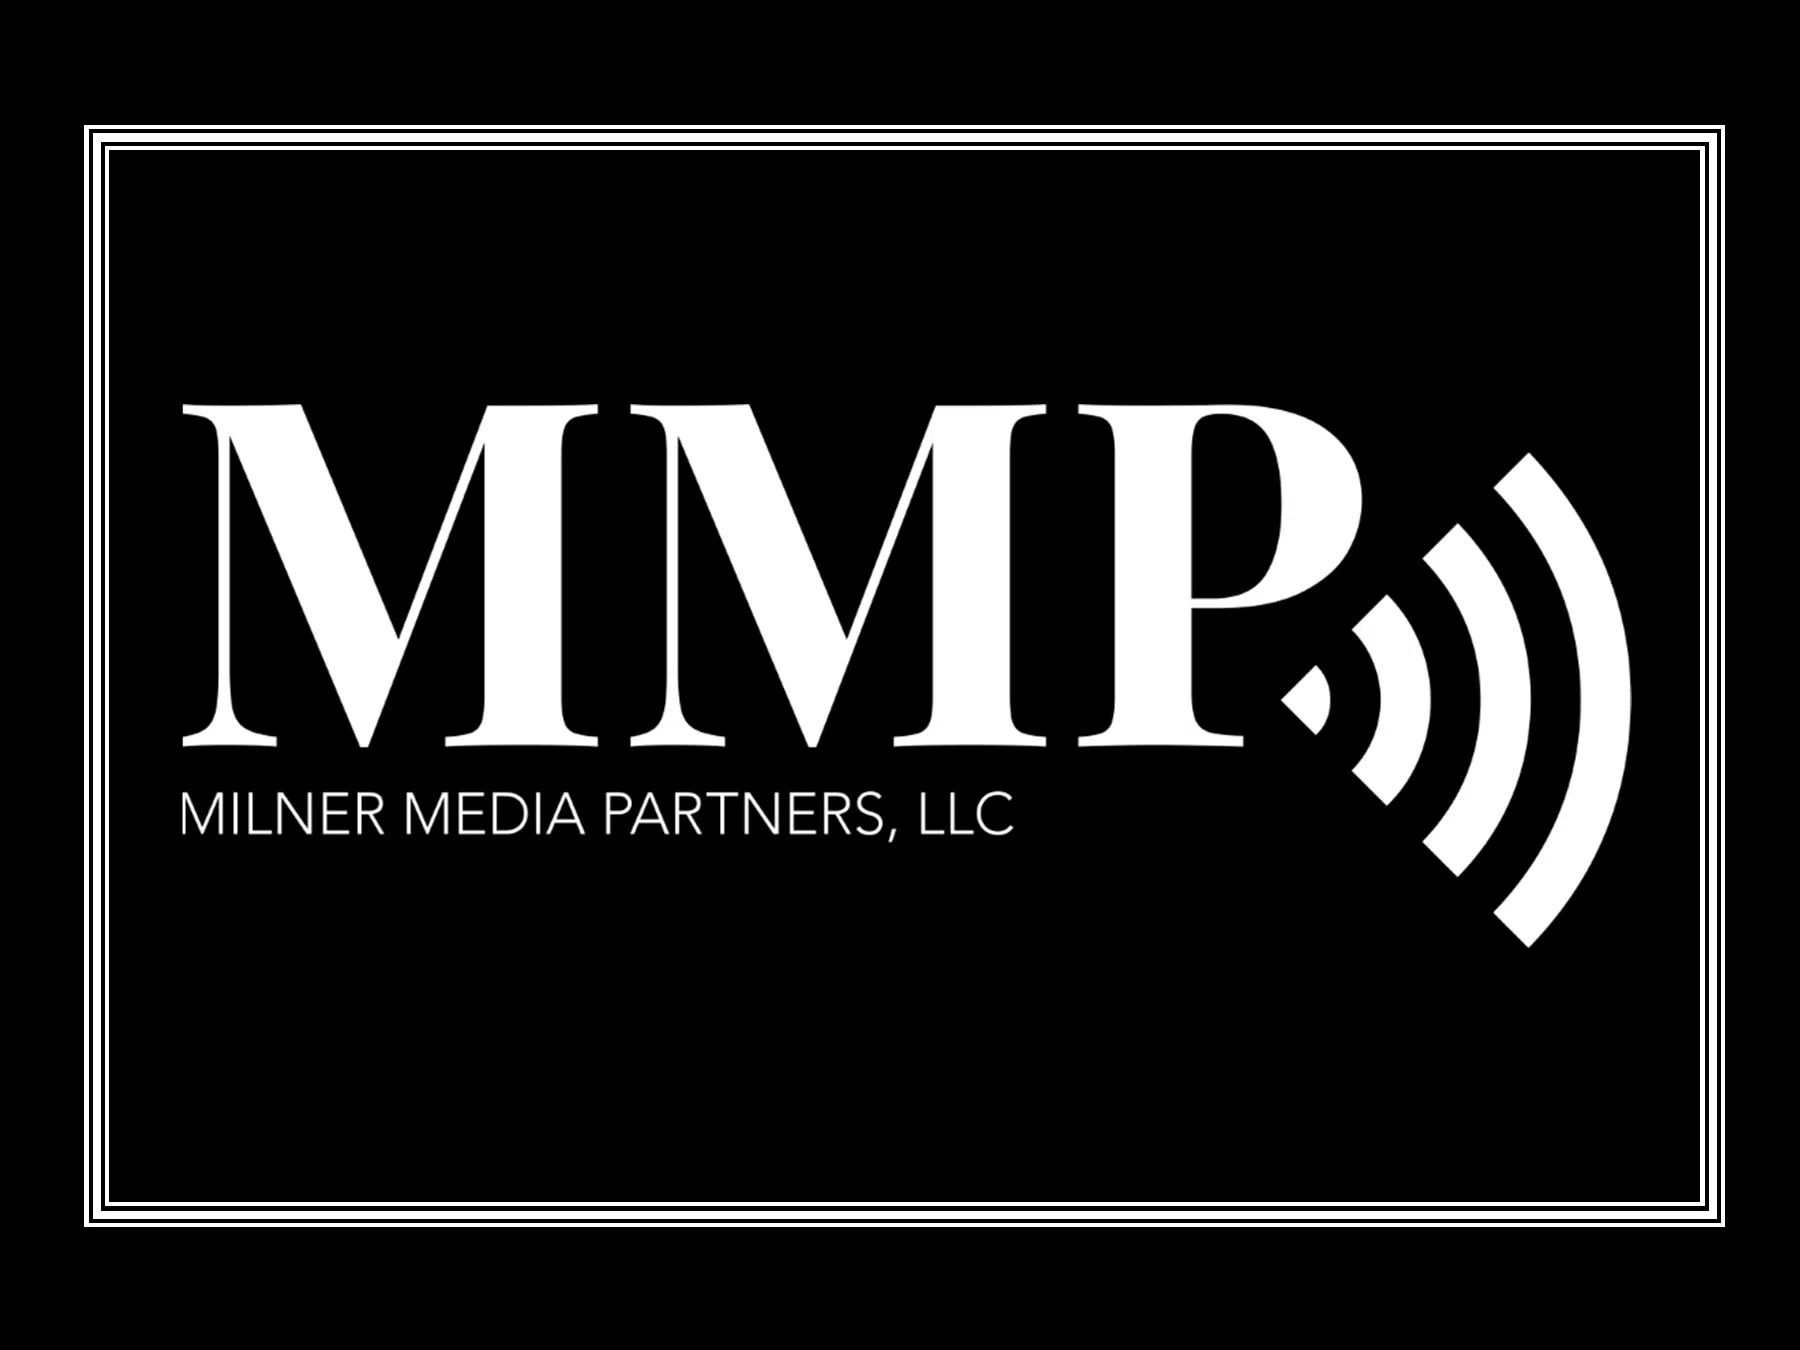 Milner Media Partners, LLC